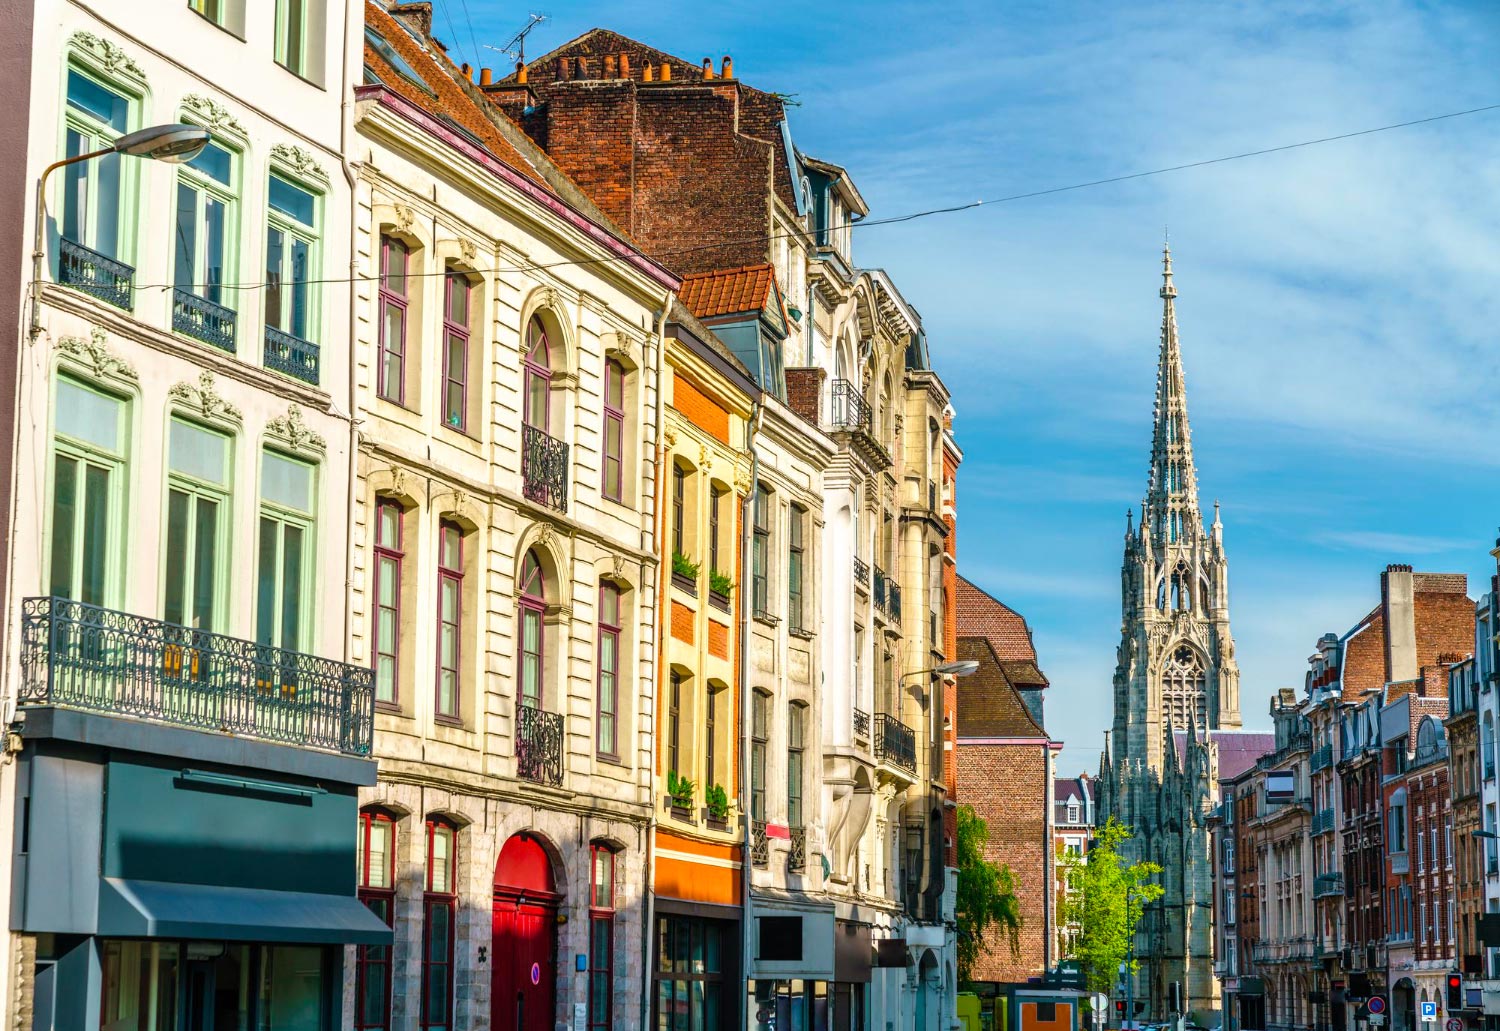 ¿Qué puedes hacer en Lille? Las 30 mejores actividades